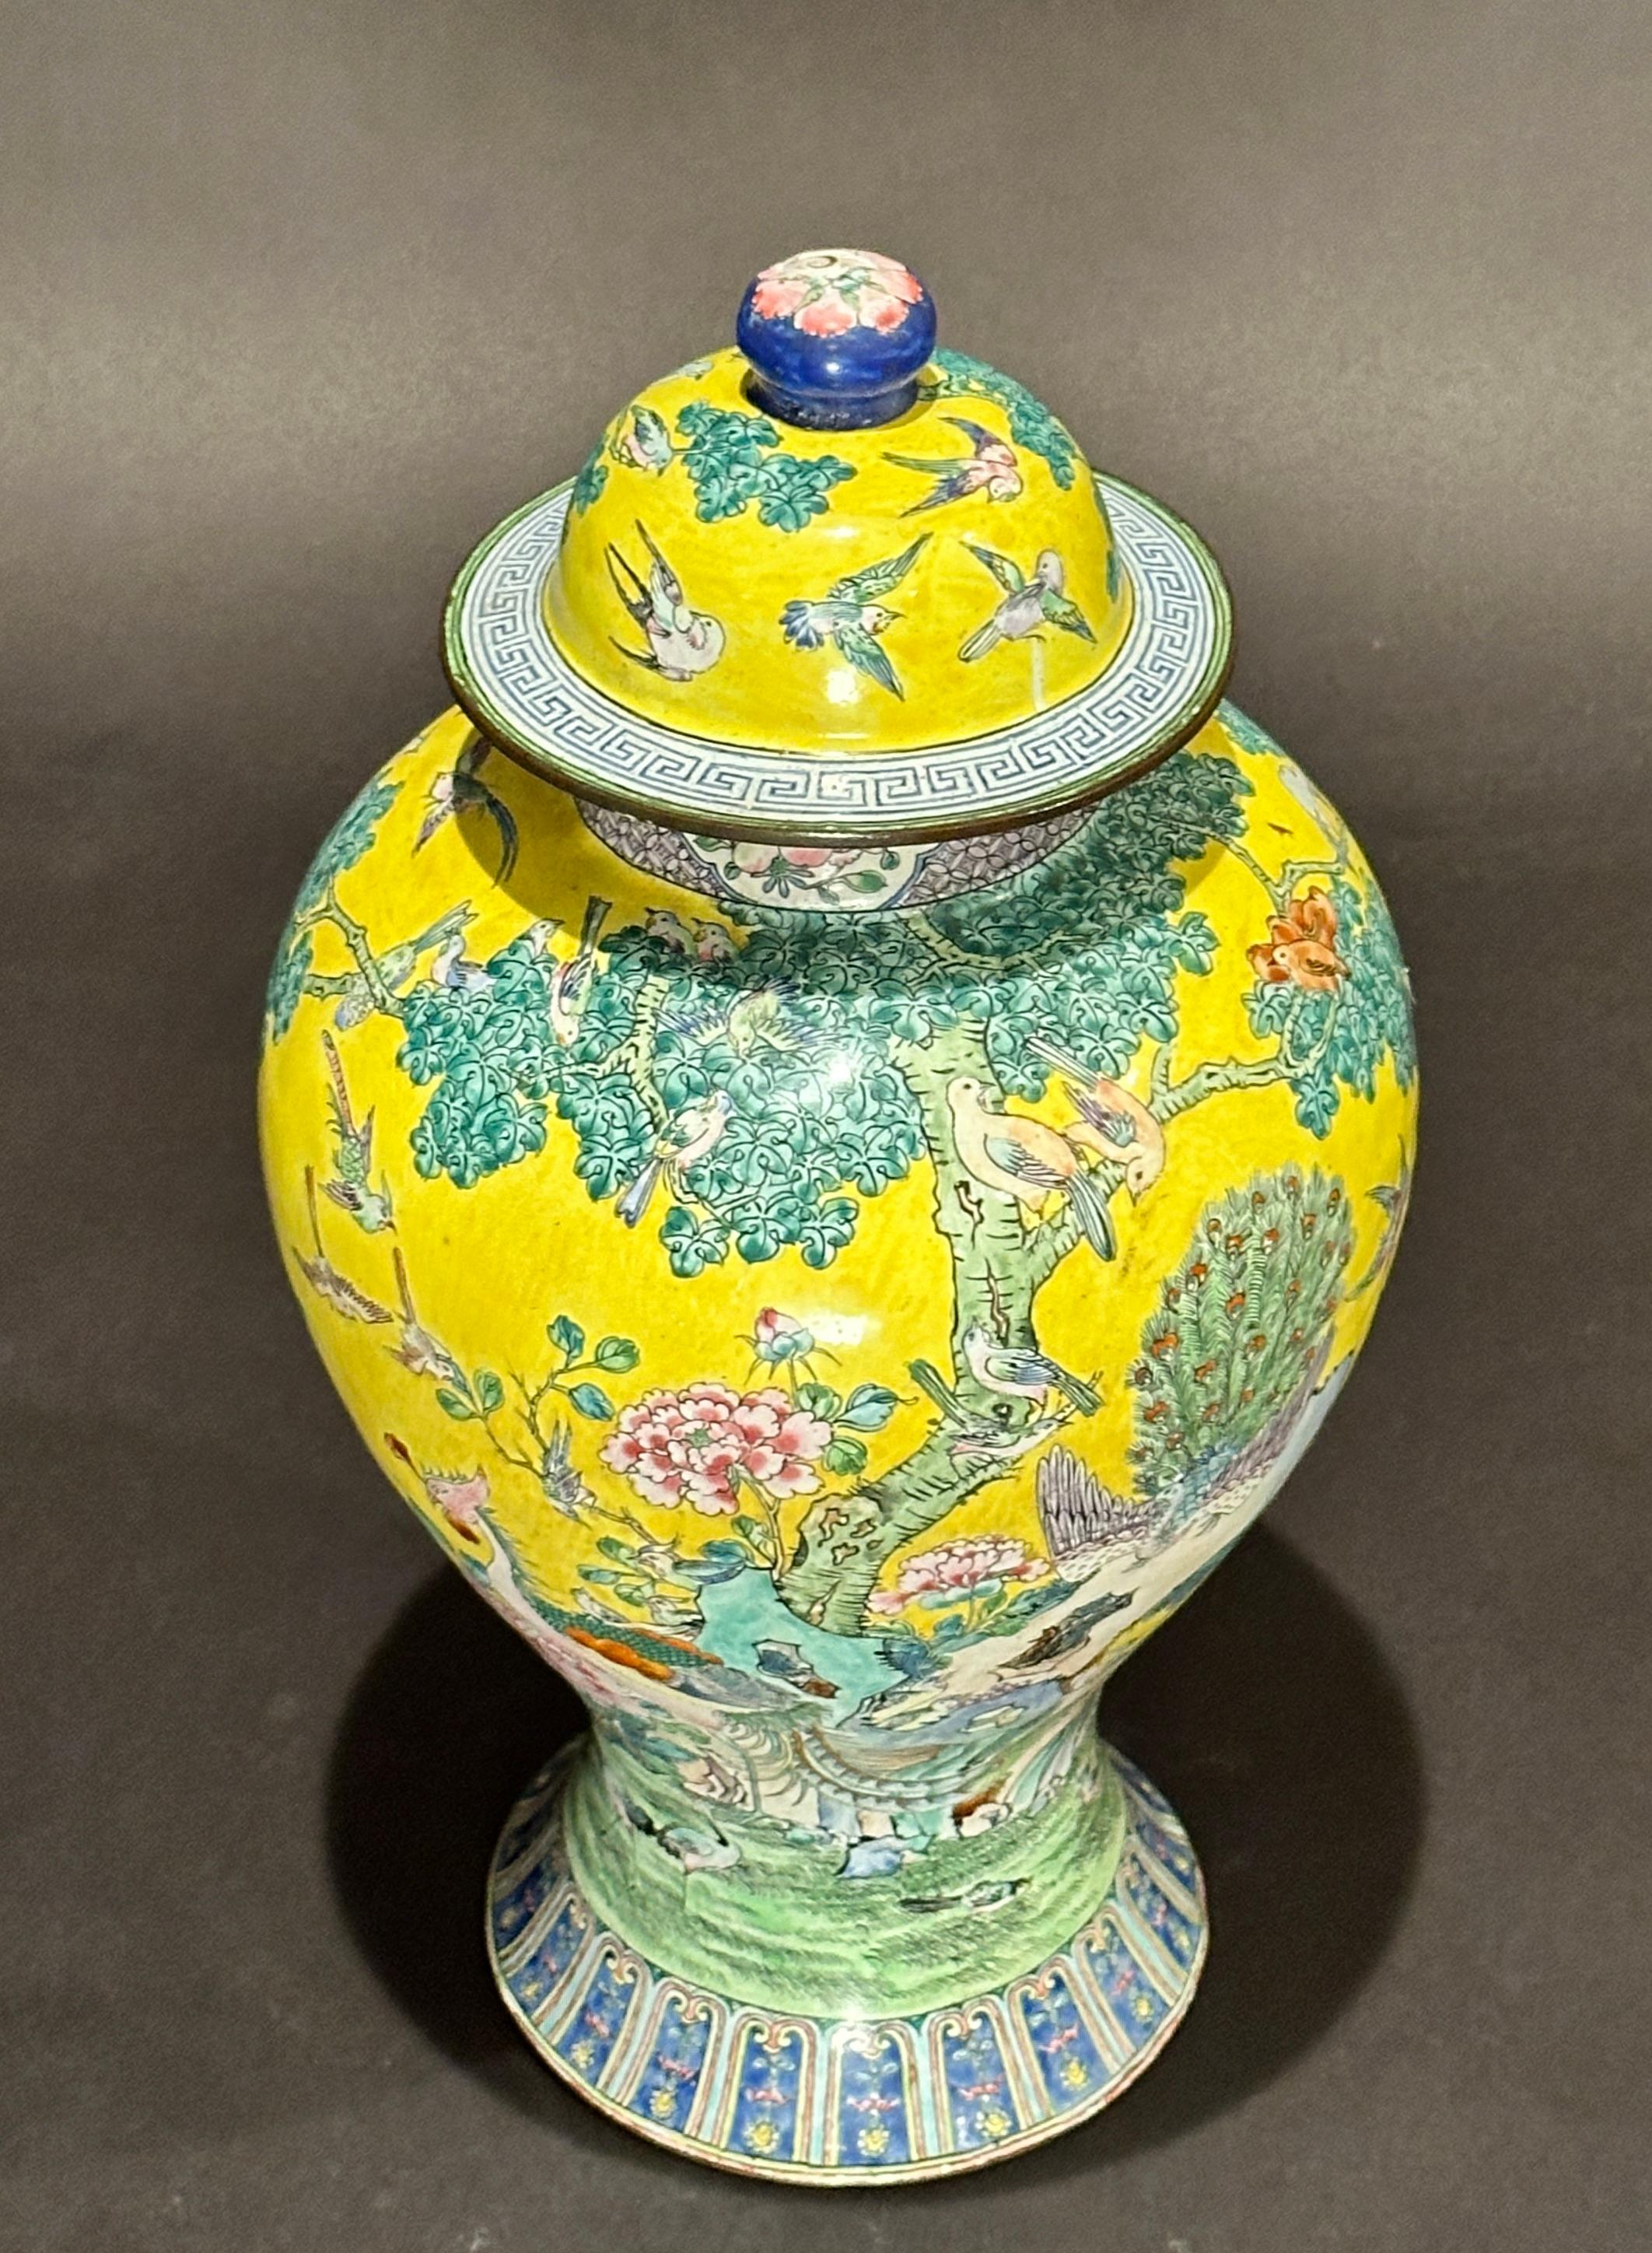 Vaso cinese ricoperto di zenzero finemente smaltato su rame con decorazione a fondo giallo, scene di uccelli esotici e fogliame. Vaso colorato con giallo, verde, blu e bianco. Fondo con doppio drago.